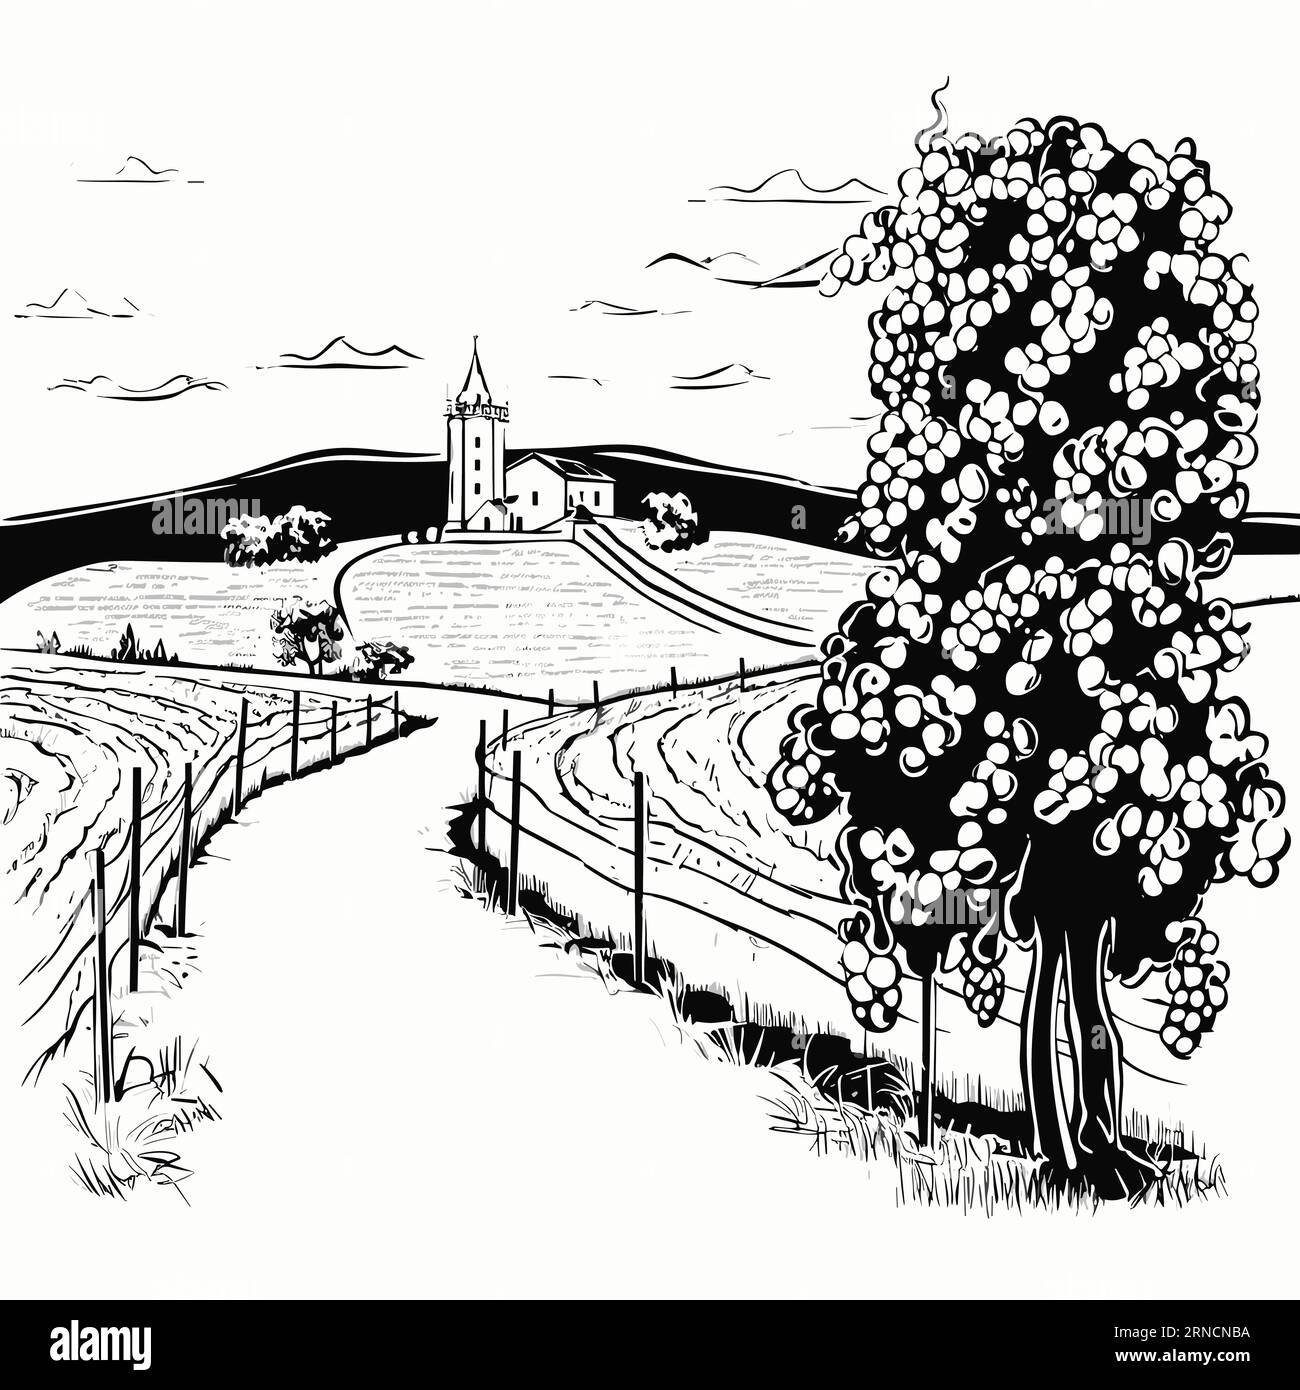 Un dessin en noir et blanc d'Un chemin à travers la campagne avec Un vignoble et des fleurs, dans le style des illustrations charmantes de personnages Illustration de Vecteur